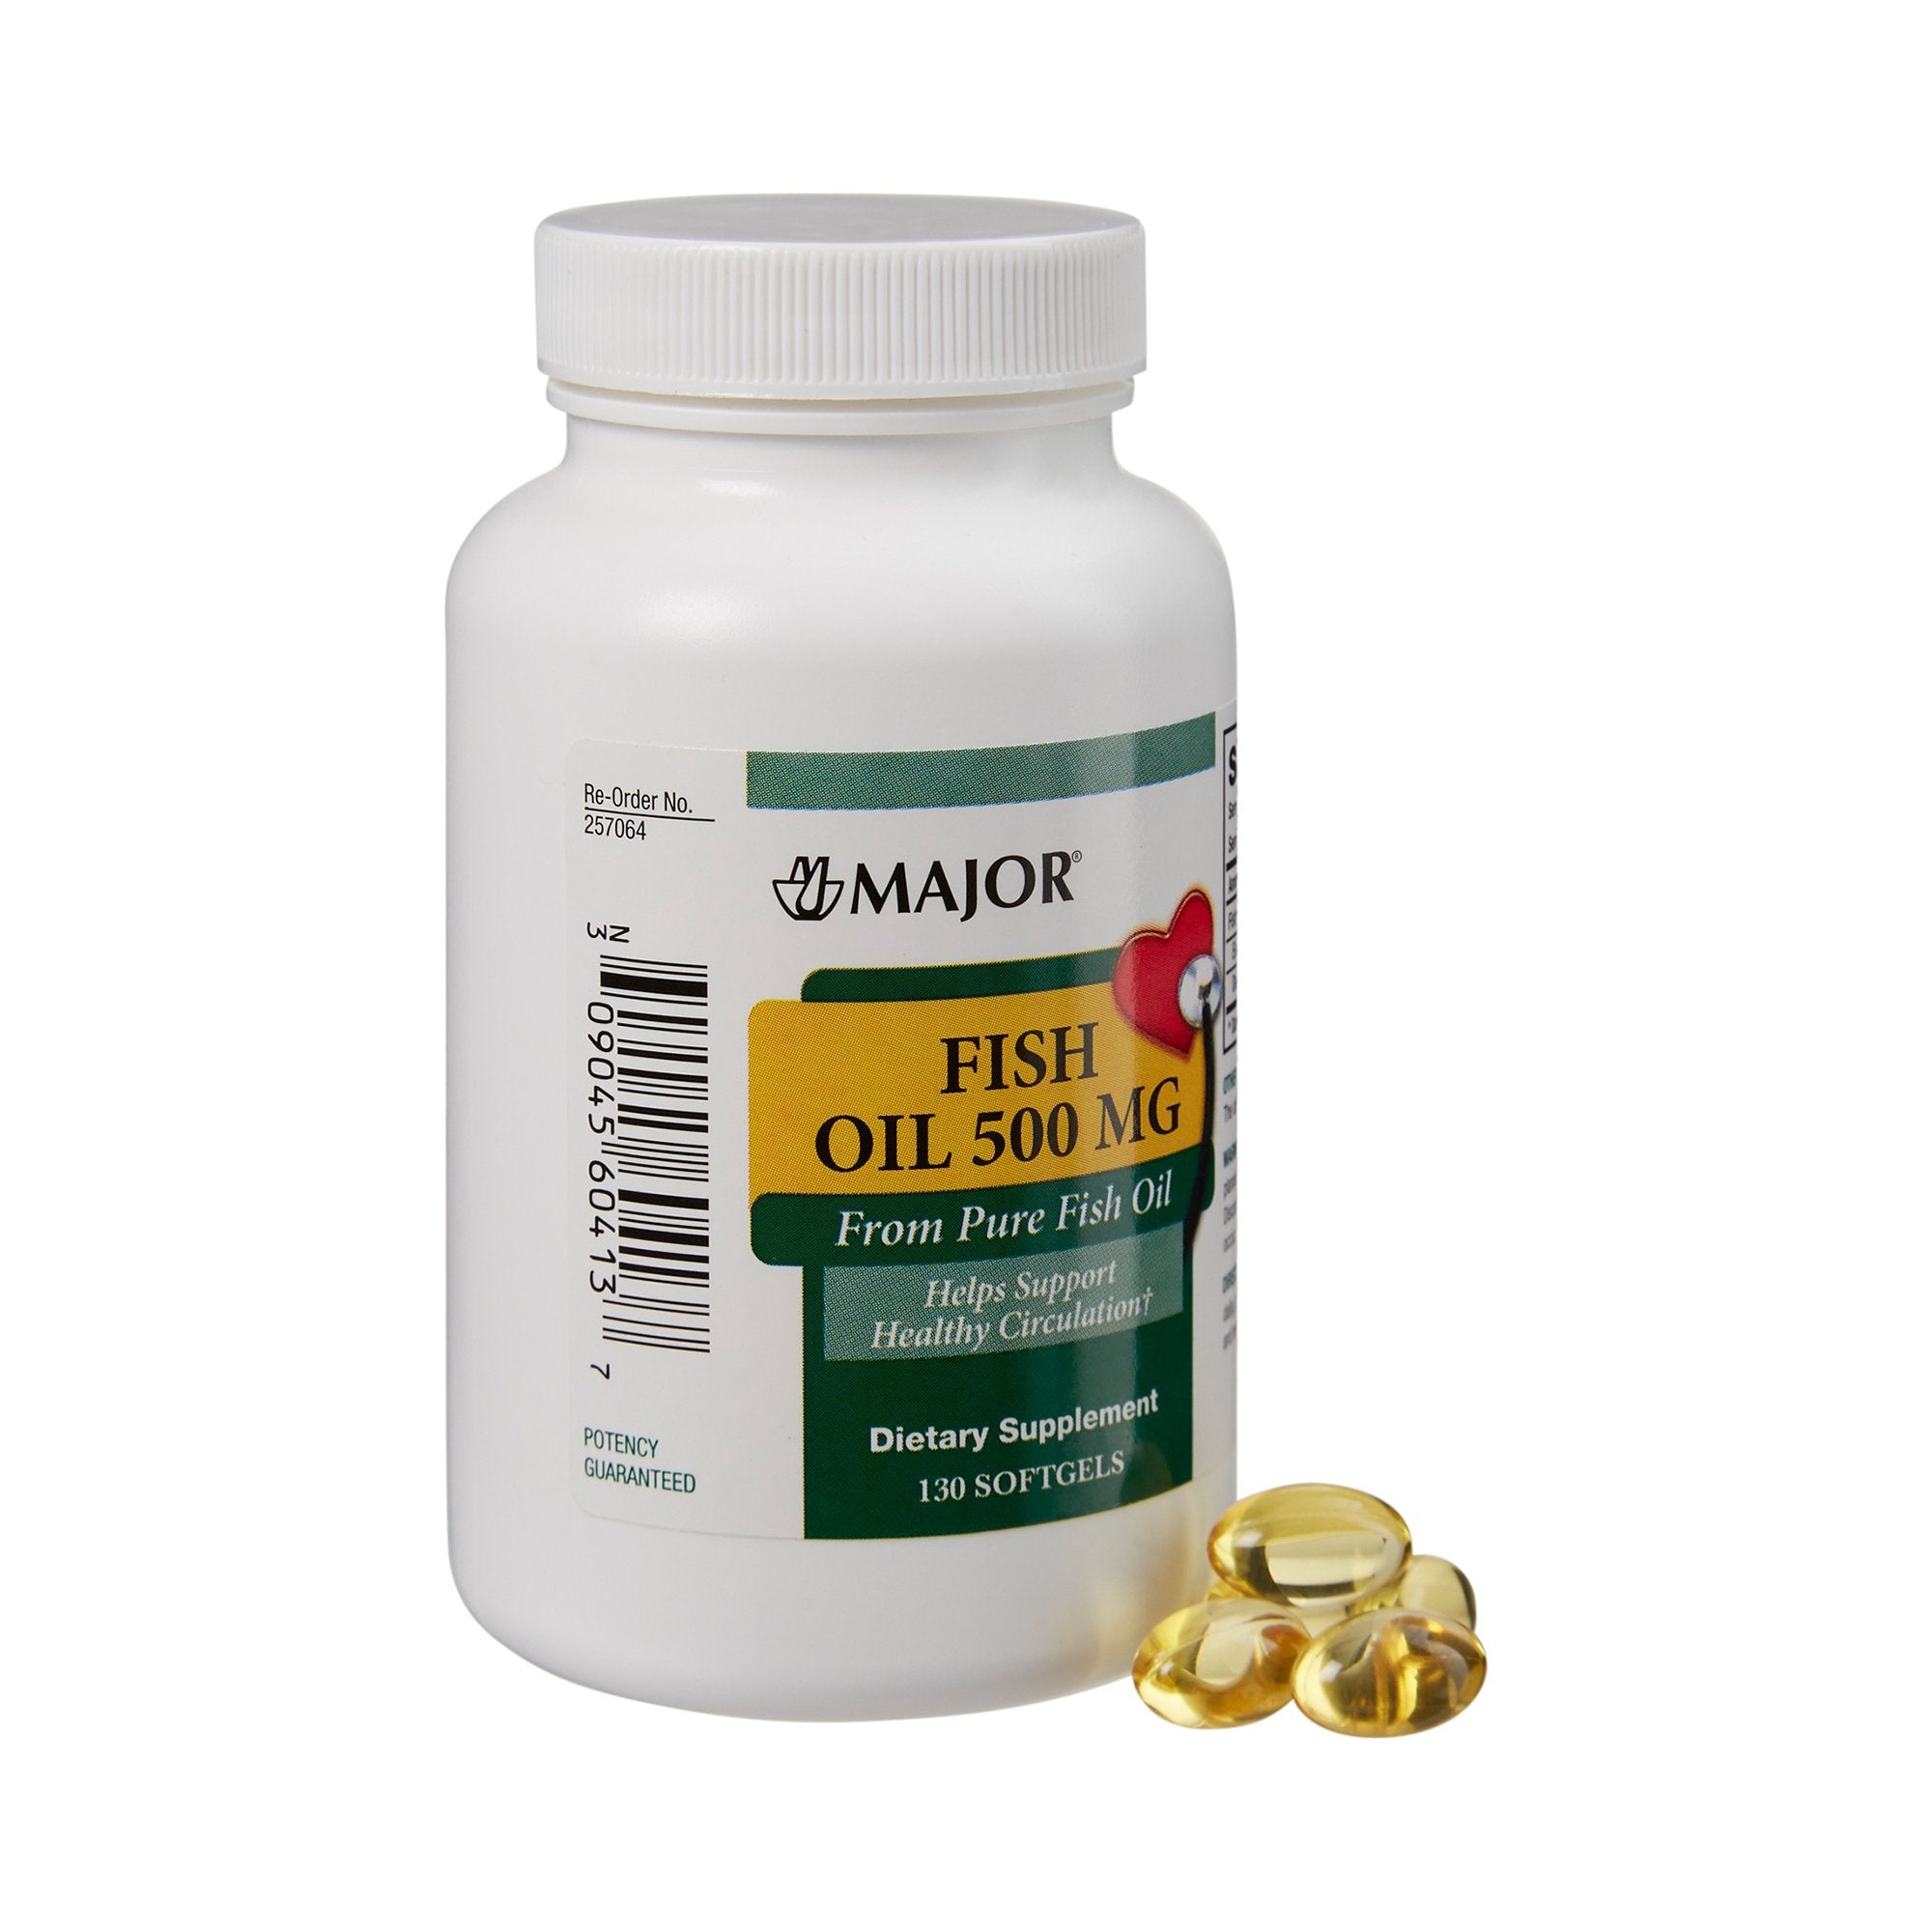 Omega 3 Supplement Major Fish Oil 500 mg Strength Softgel 130 per Bottle